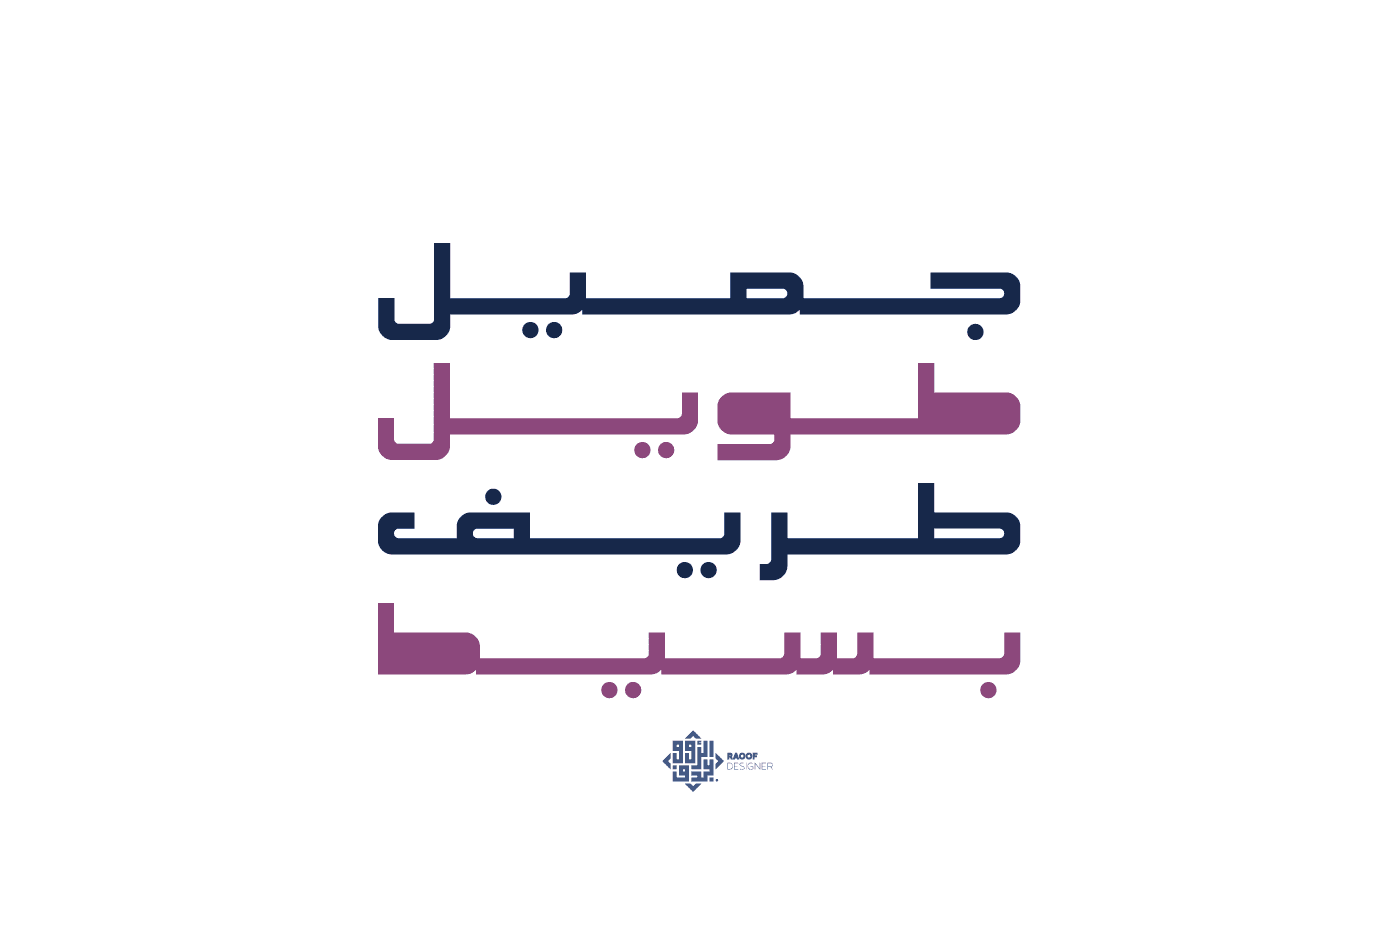 تحميل خط كشيدة العربي الرائع بوزنين مختلفين - Download kasheed font